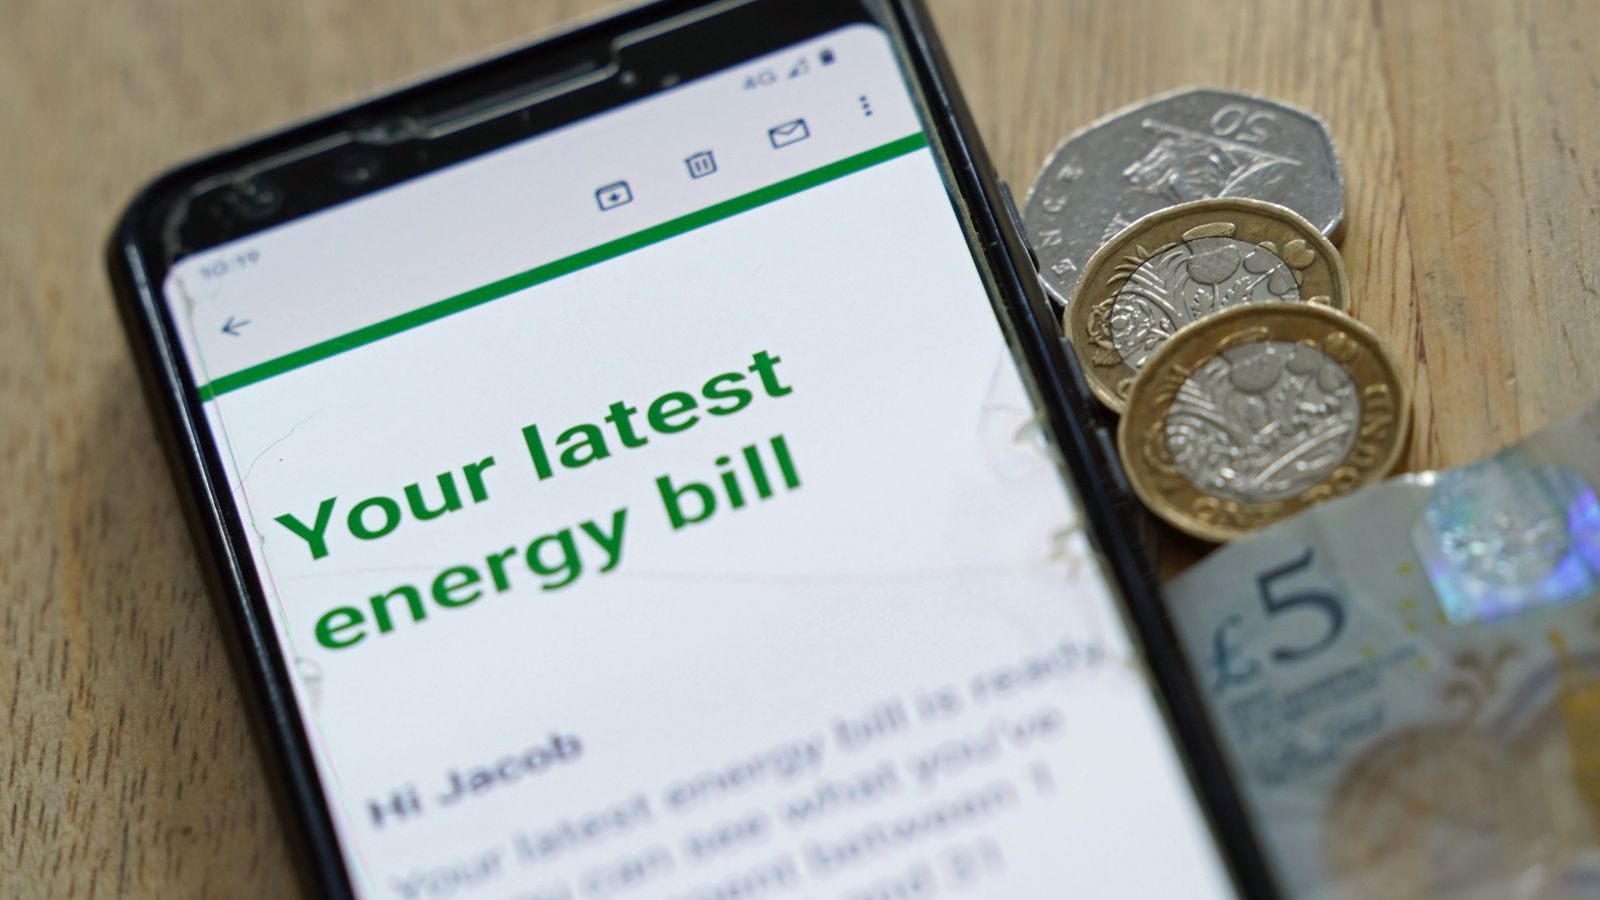 Energierechnungen: Lieferanten sehen sich harten Maßnahmen gegenüber, um Direktschulden „über das erforderliche Maß hinaus“ zu erhöhen |  Wirtschaftsnachrichten